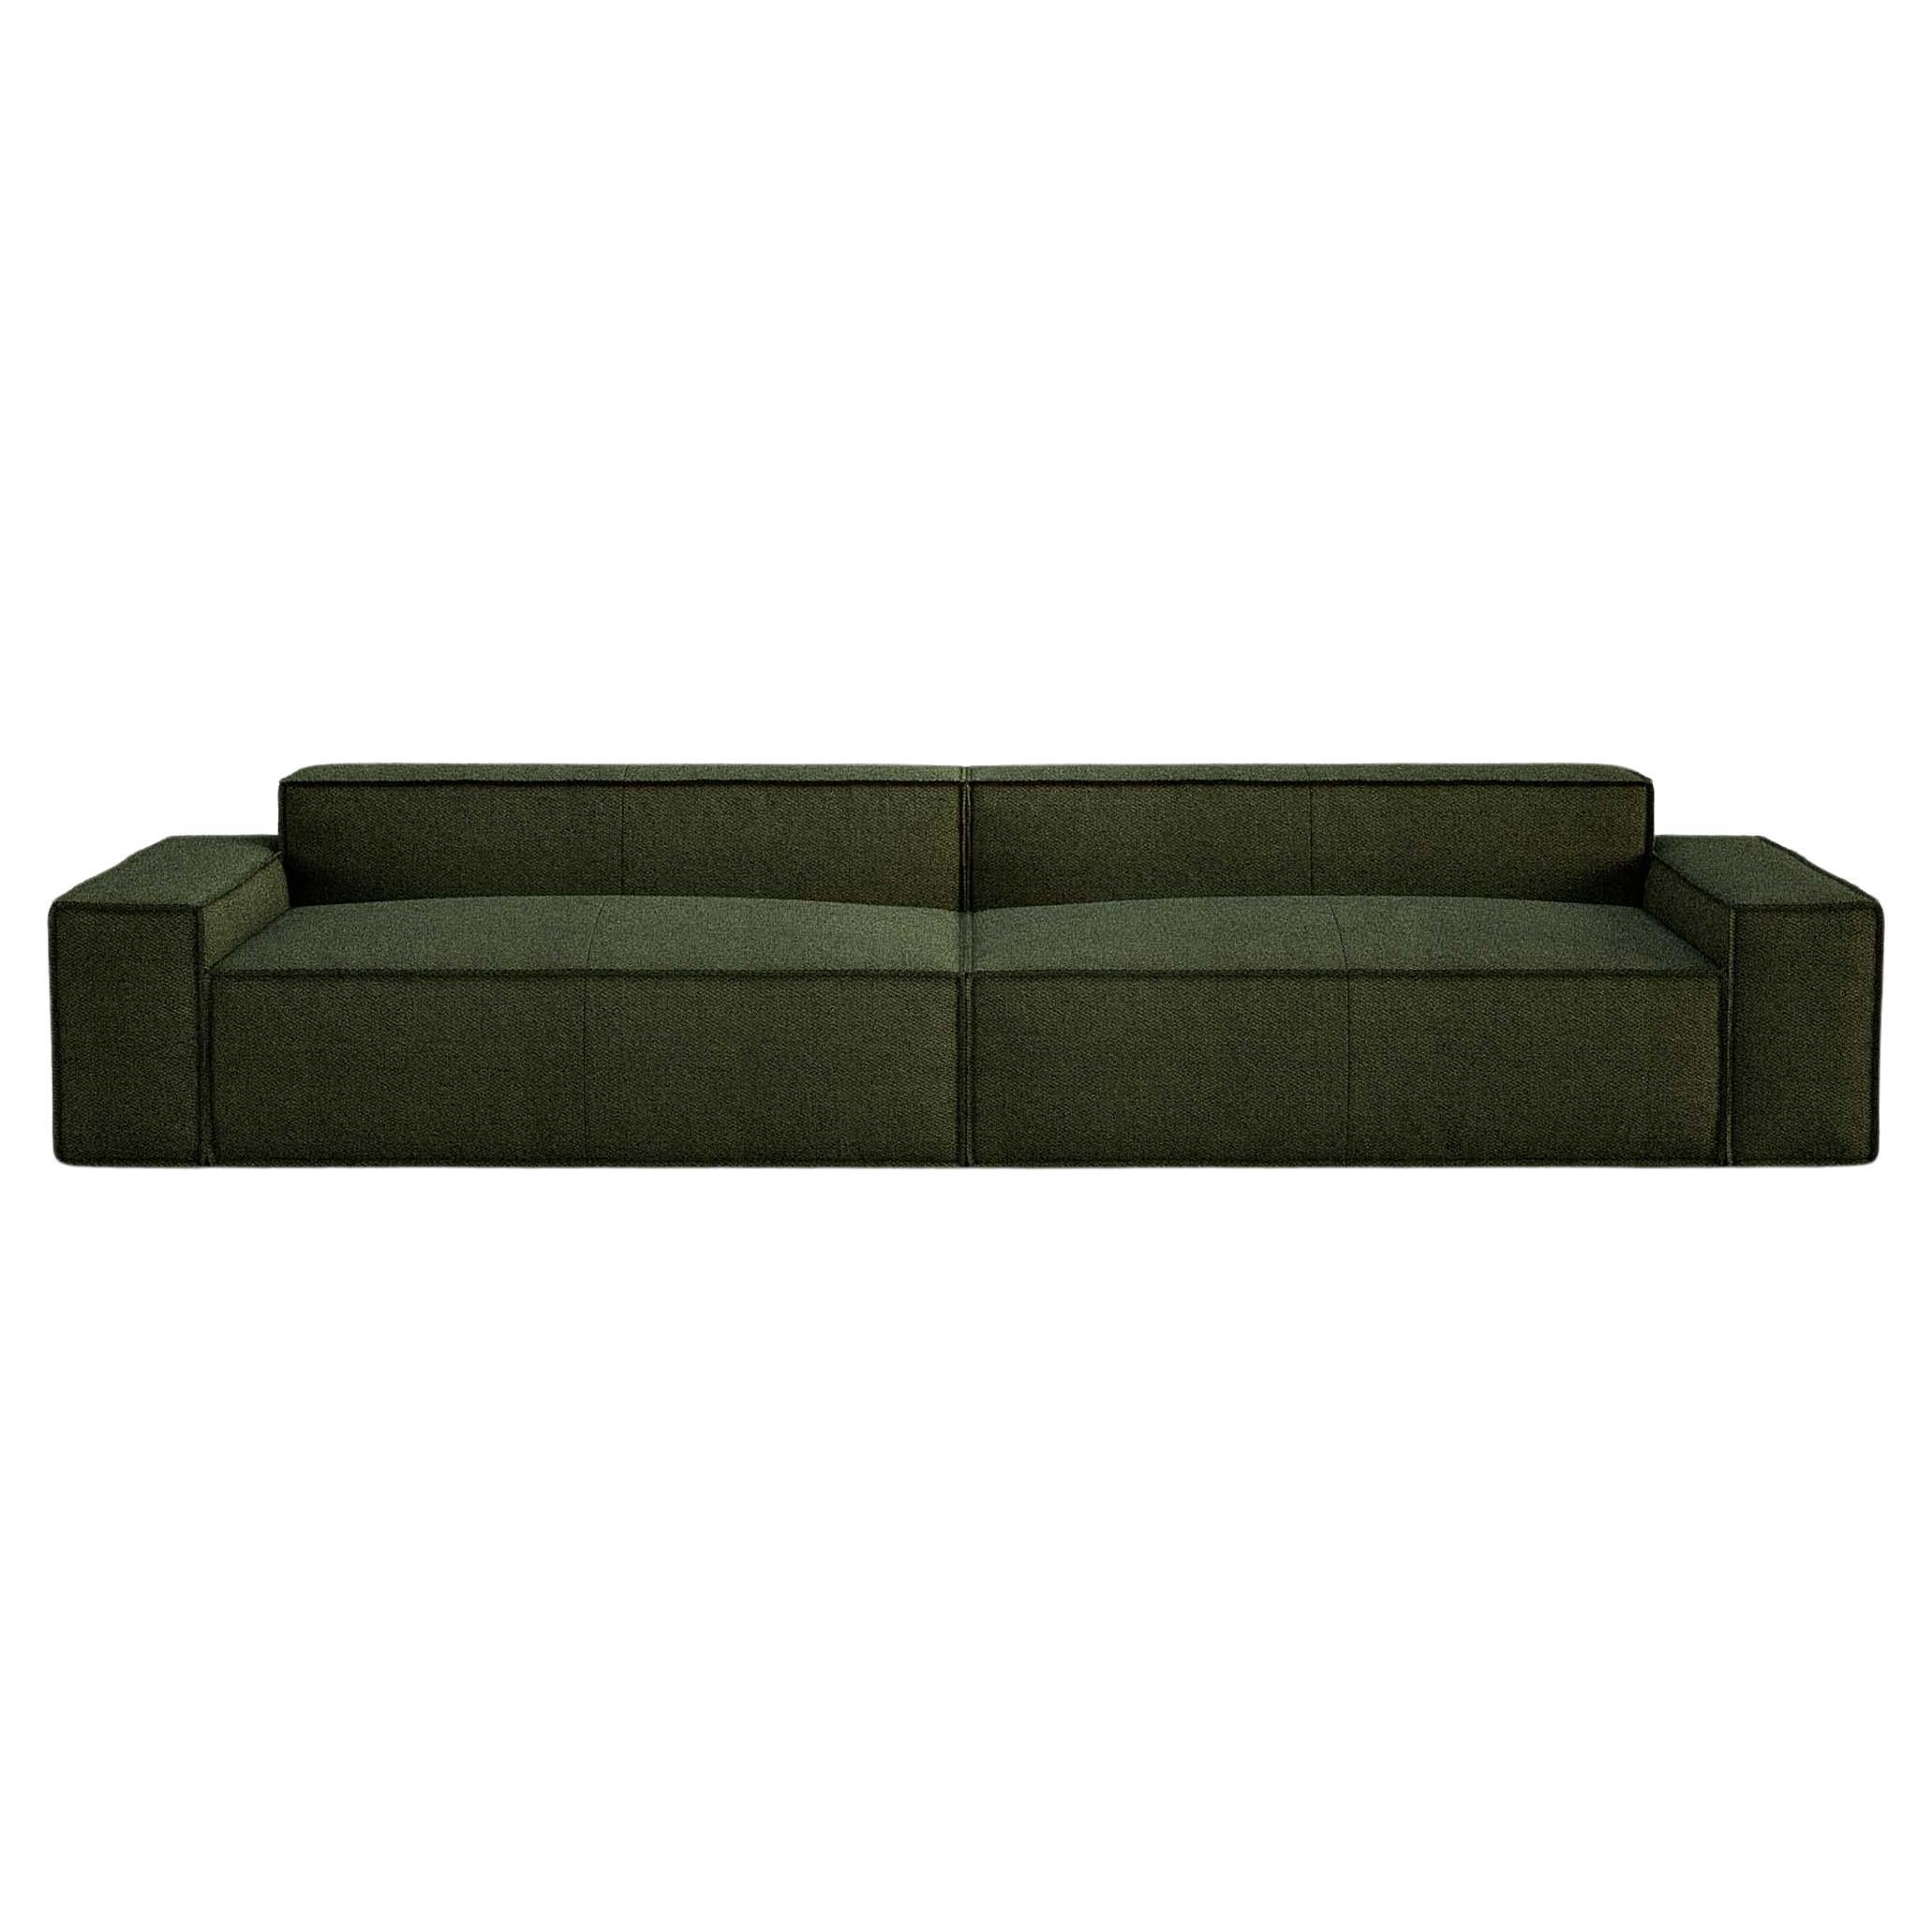 Contemporary Sofa 'Davis' by Amura Lab, Model 021.022, Brera 850, Green 11 For Sale